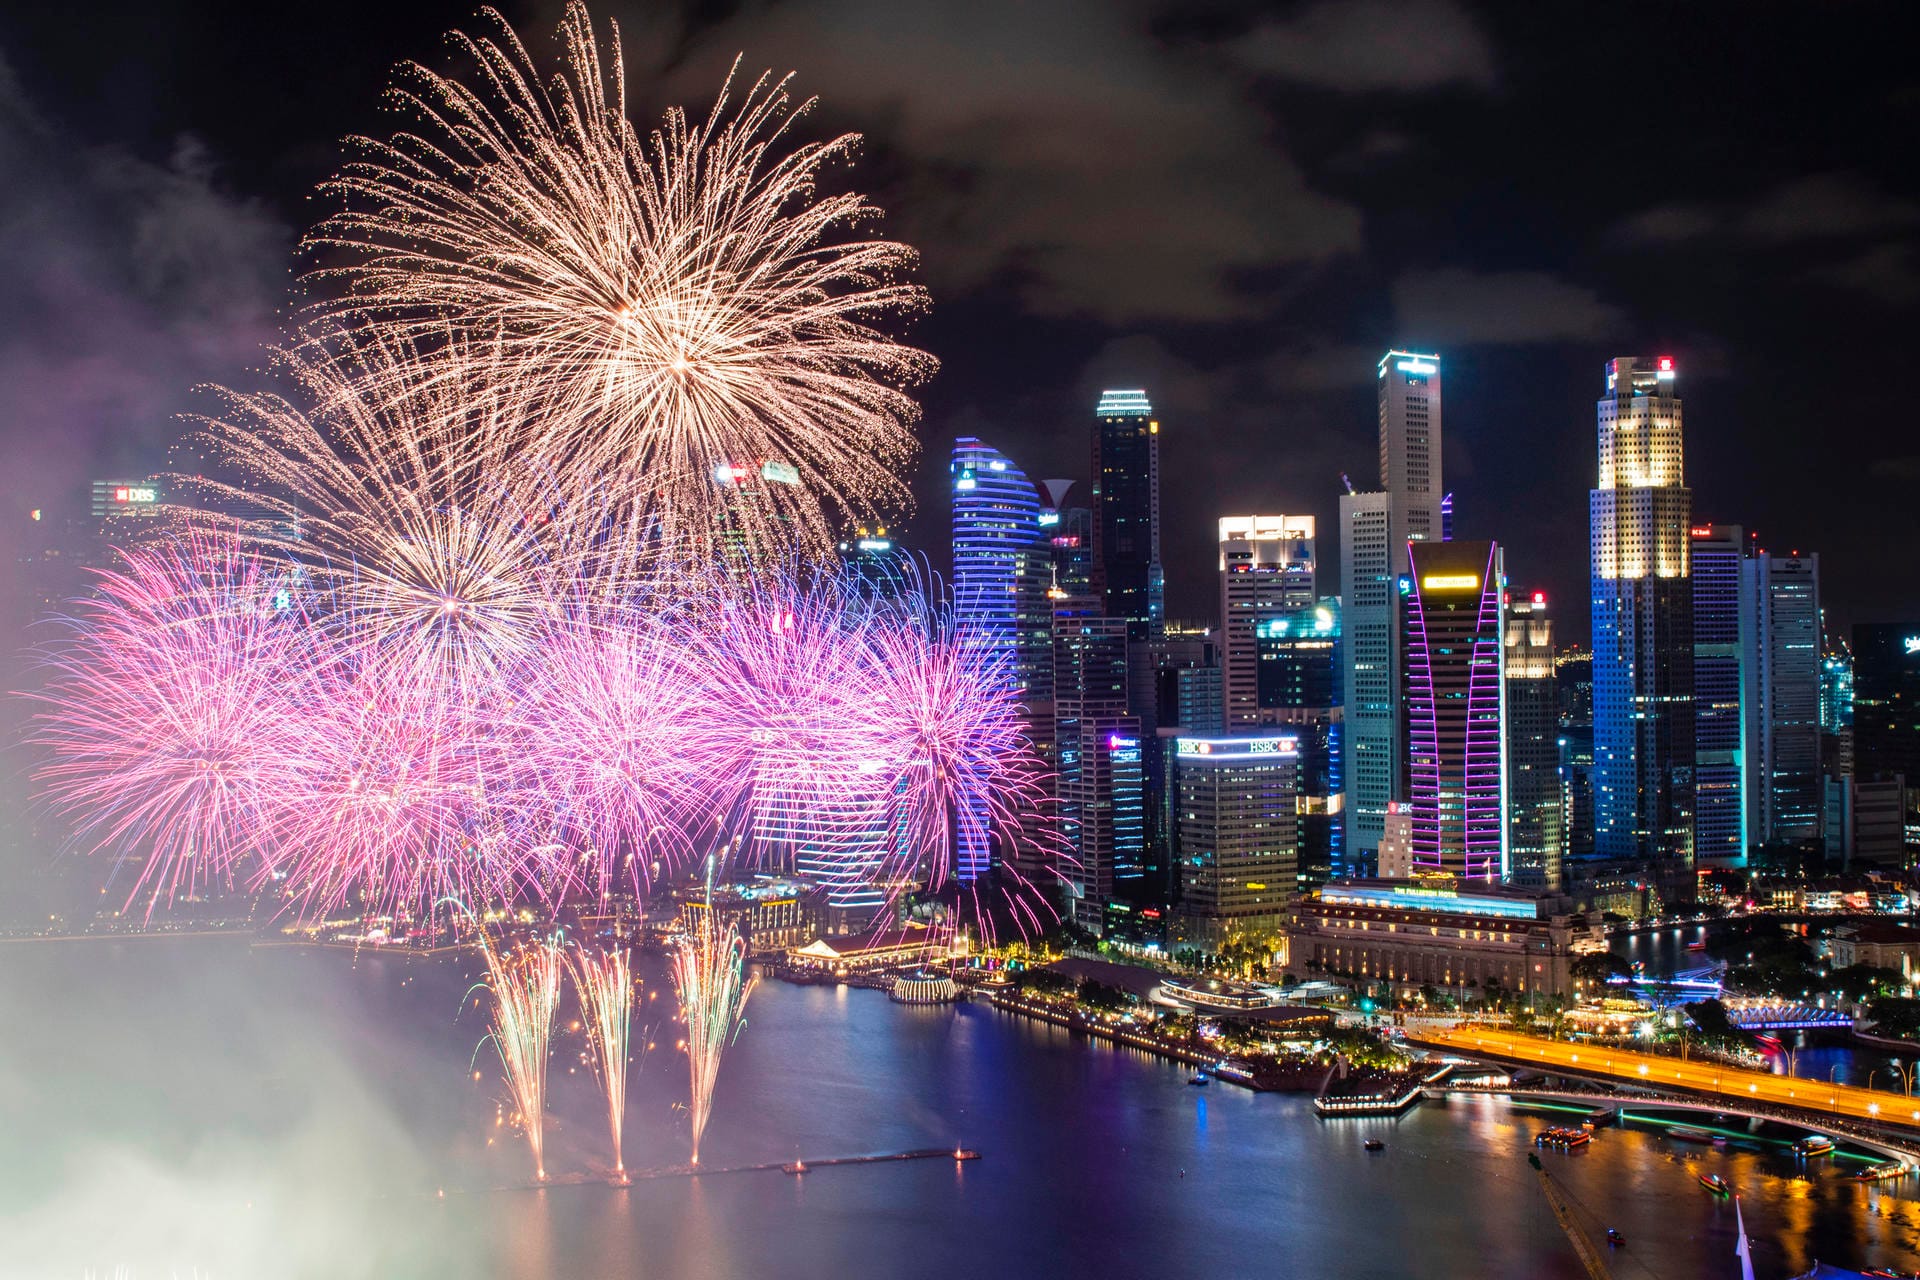 Singapur sieht auch ohne Feuerwerk toll aus: Raketen explodieren während der Neujahrsfeierlichkeiten im Hafenviertel Marina Bay.